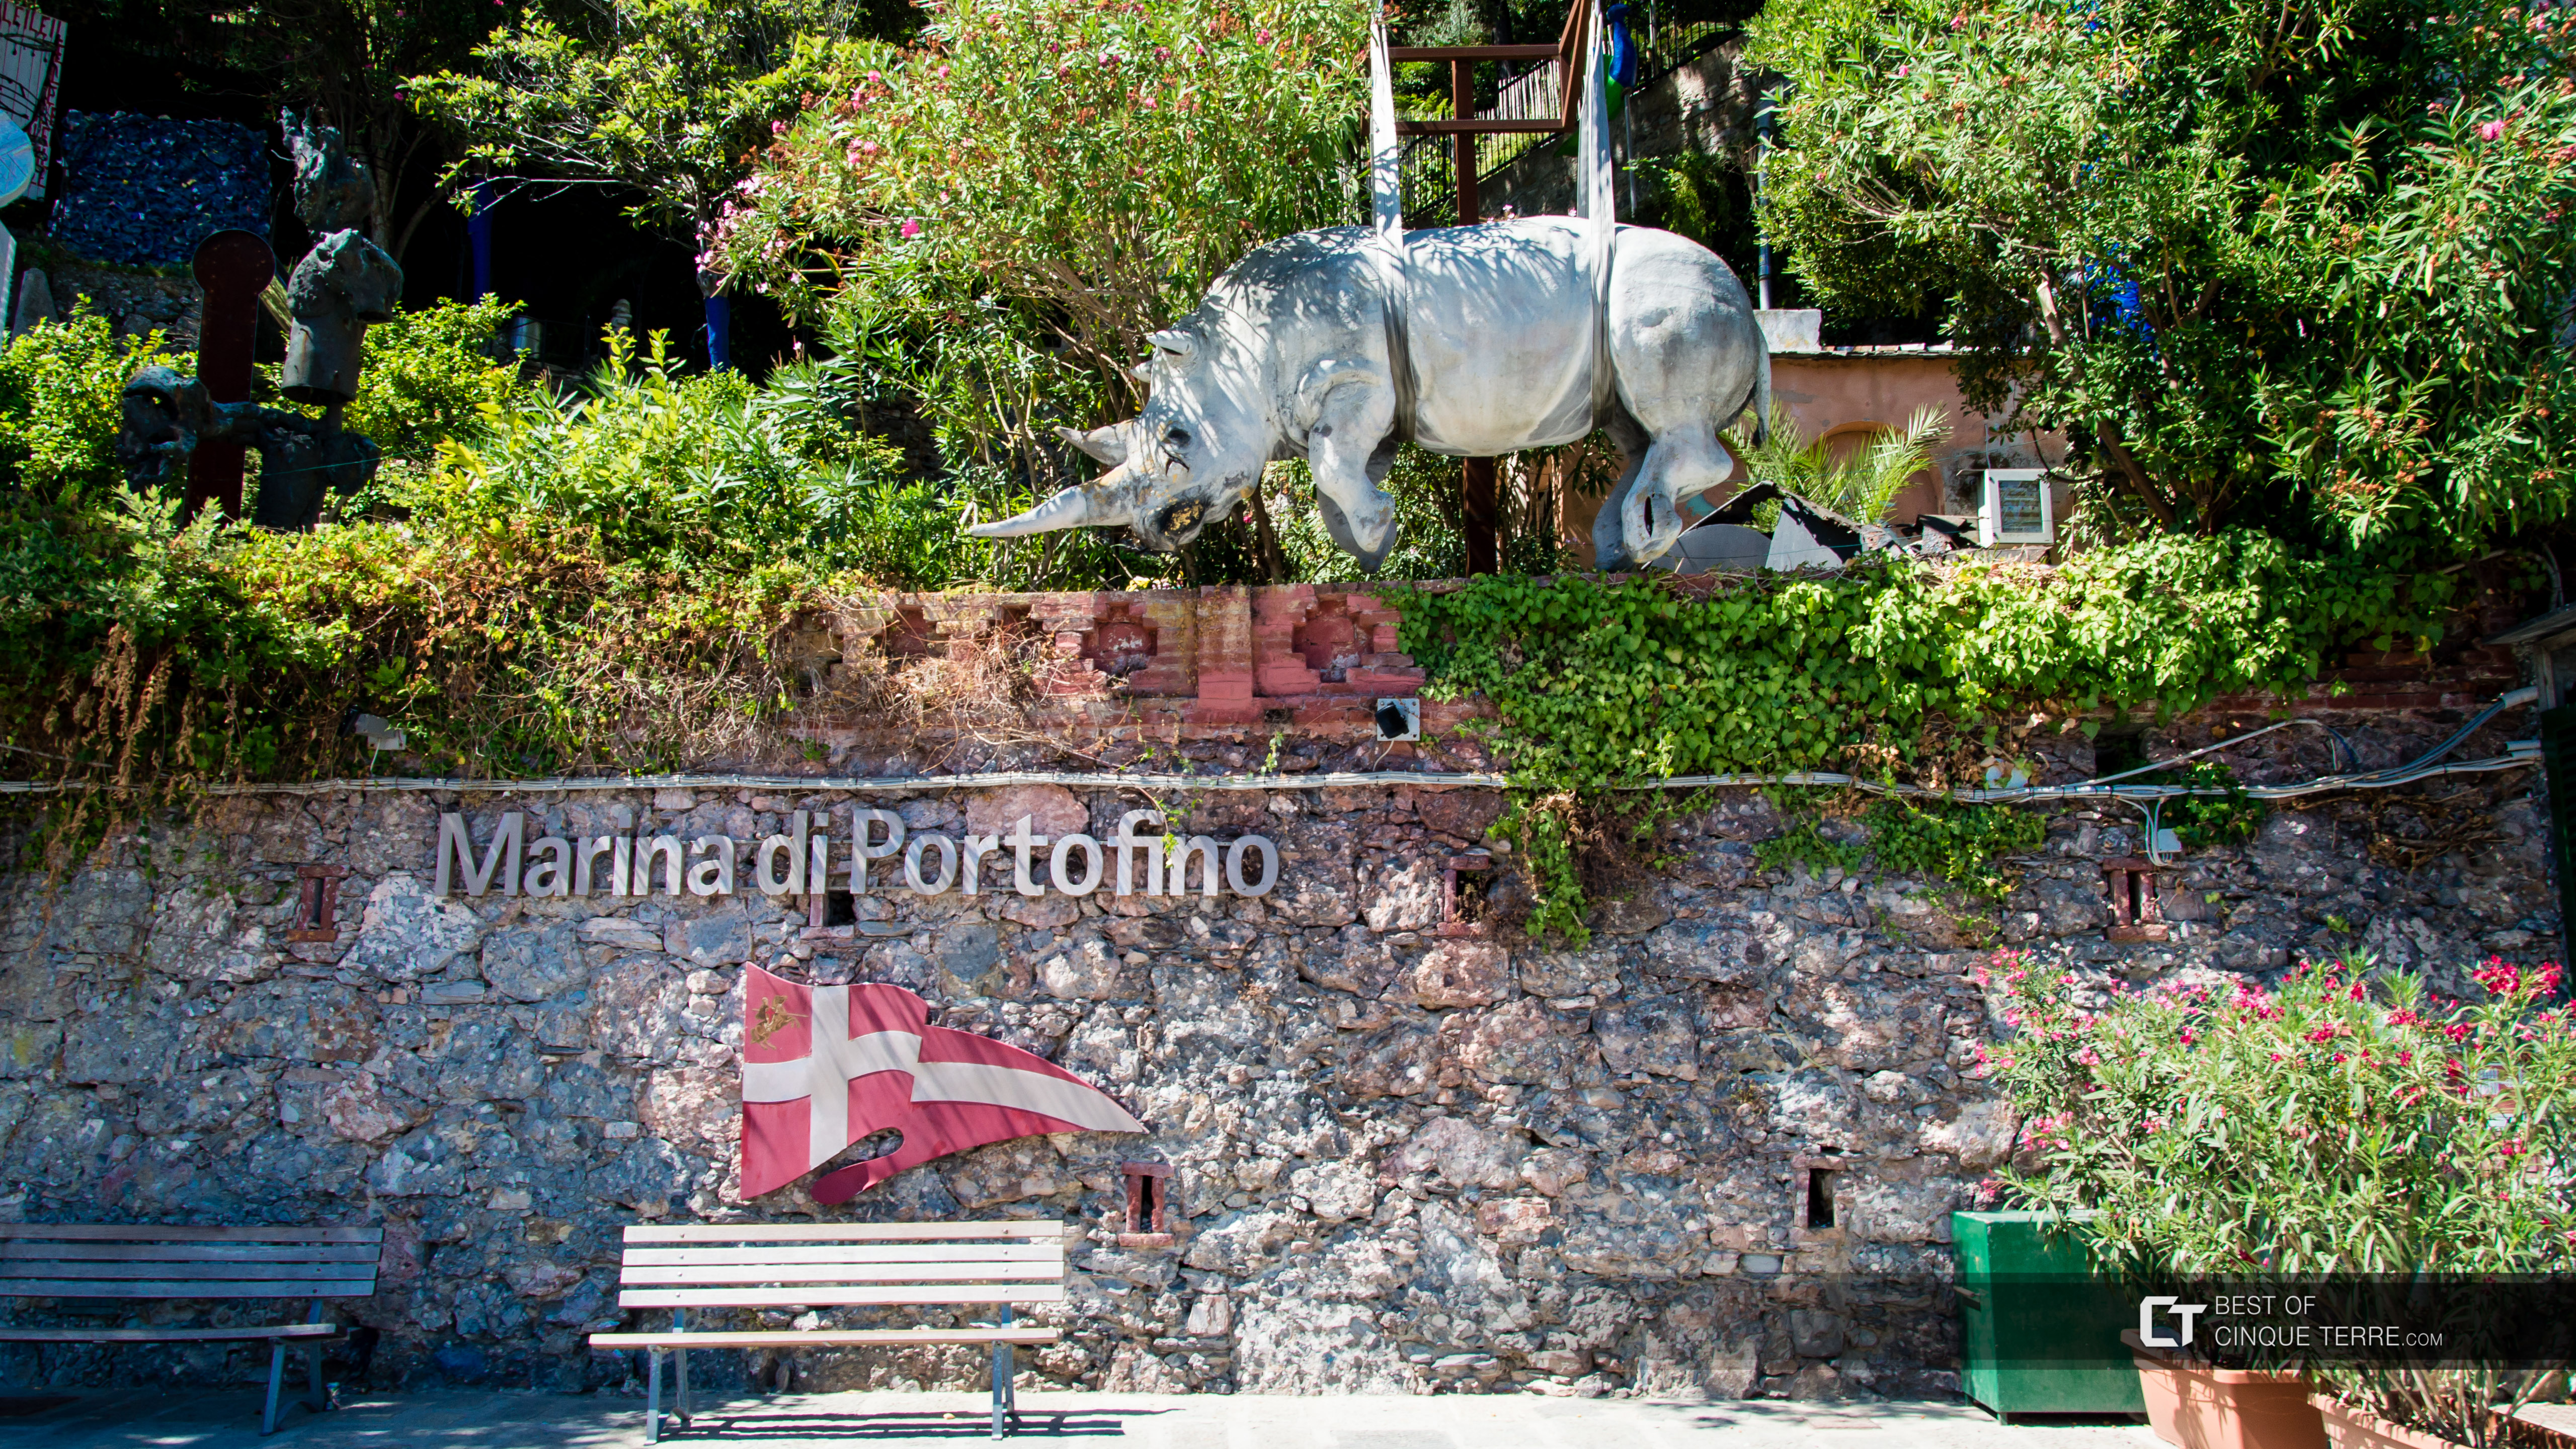 Statuia rinocerului, simbolul orașului, Portofino, Italia